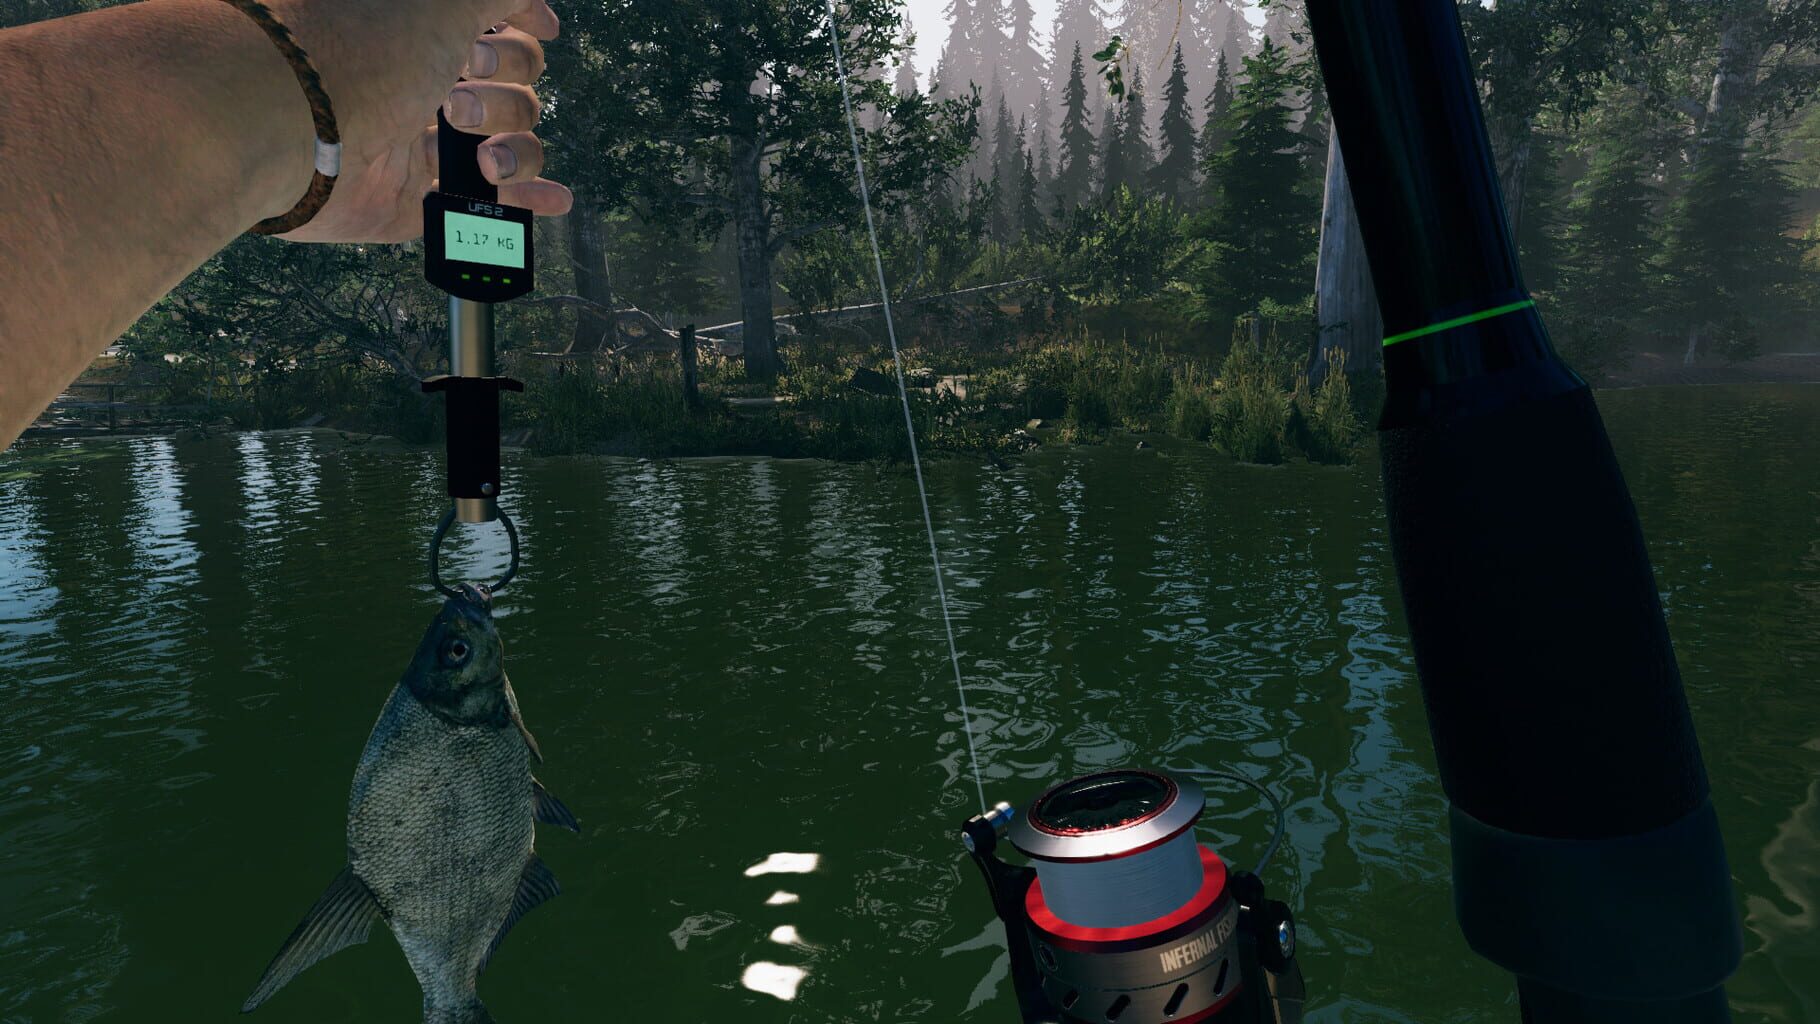 Ultimate Fishing Simulator 2